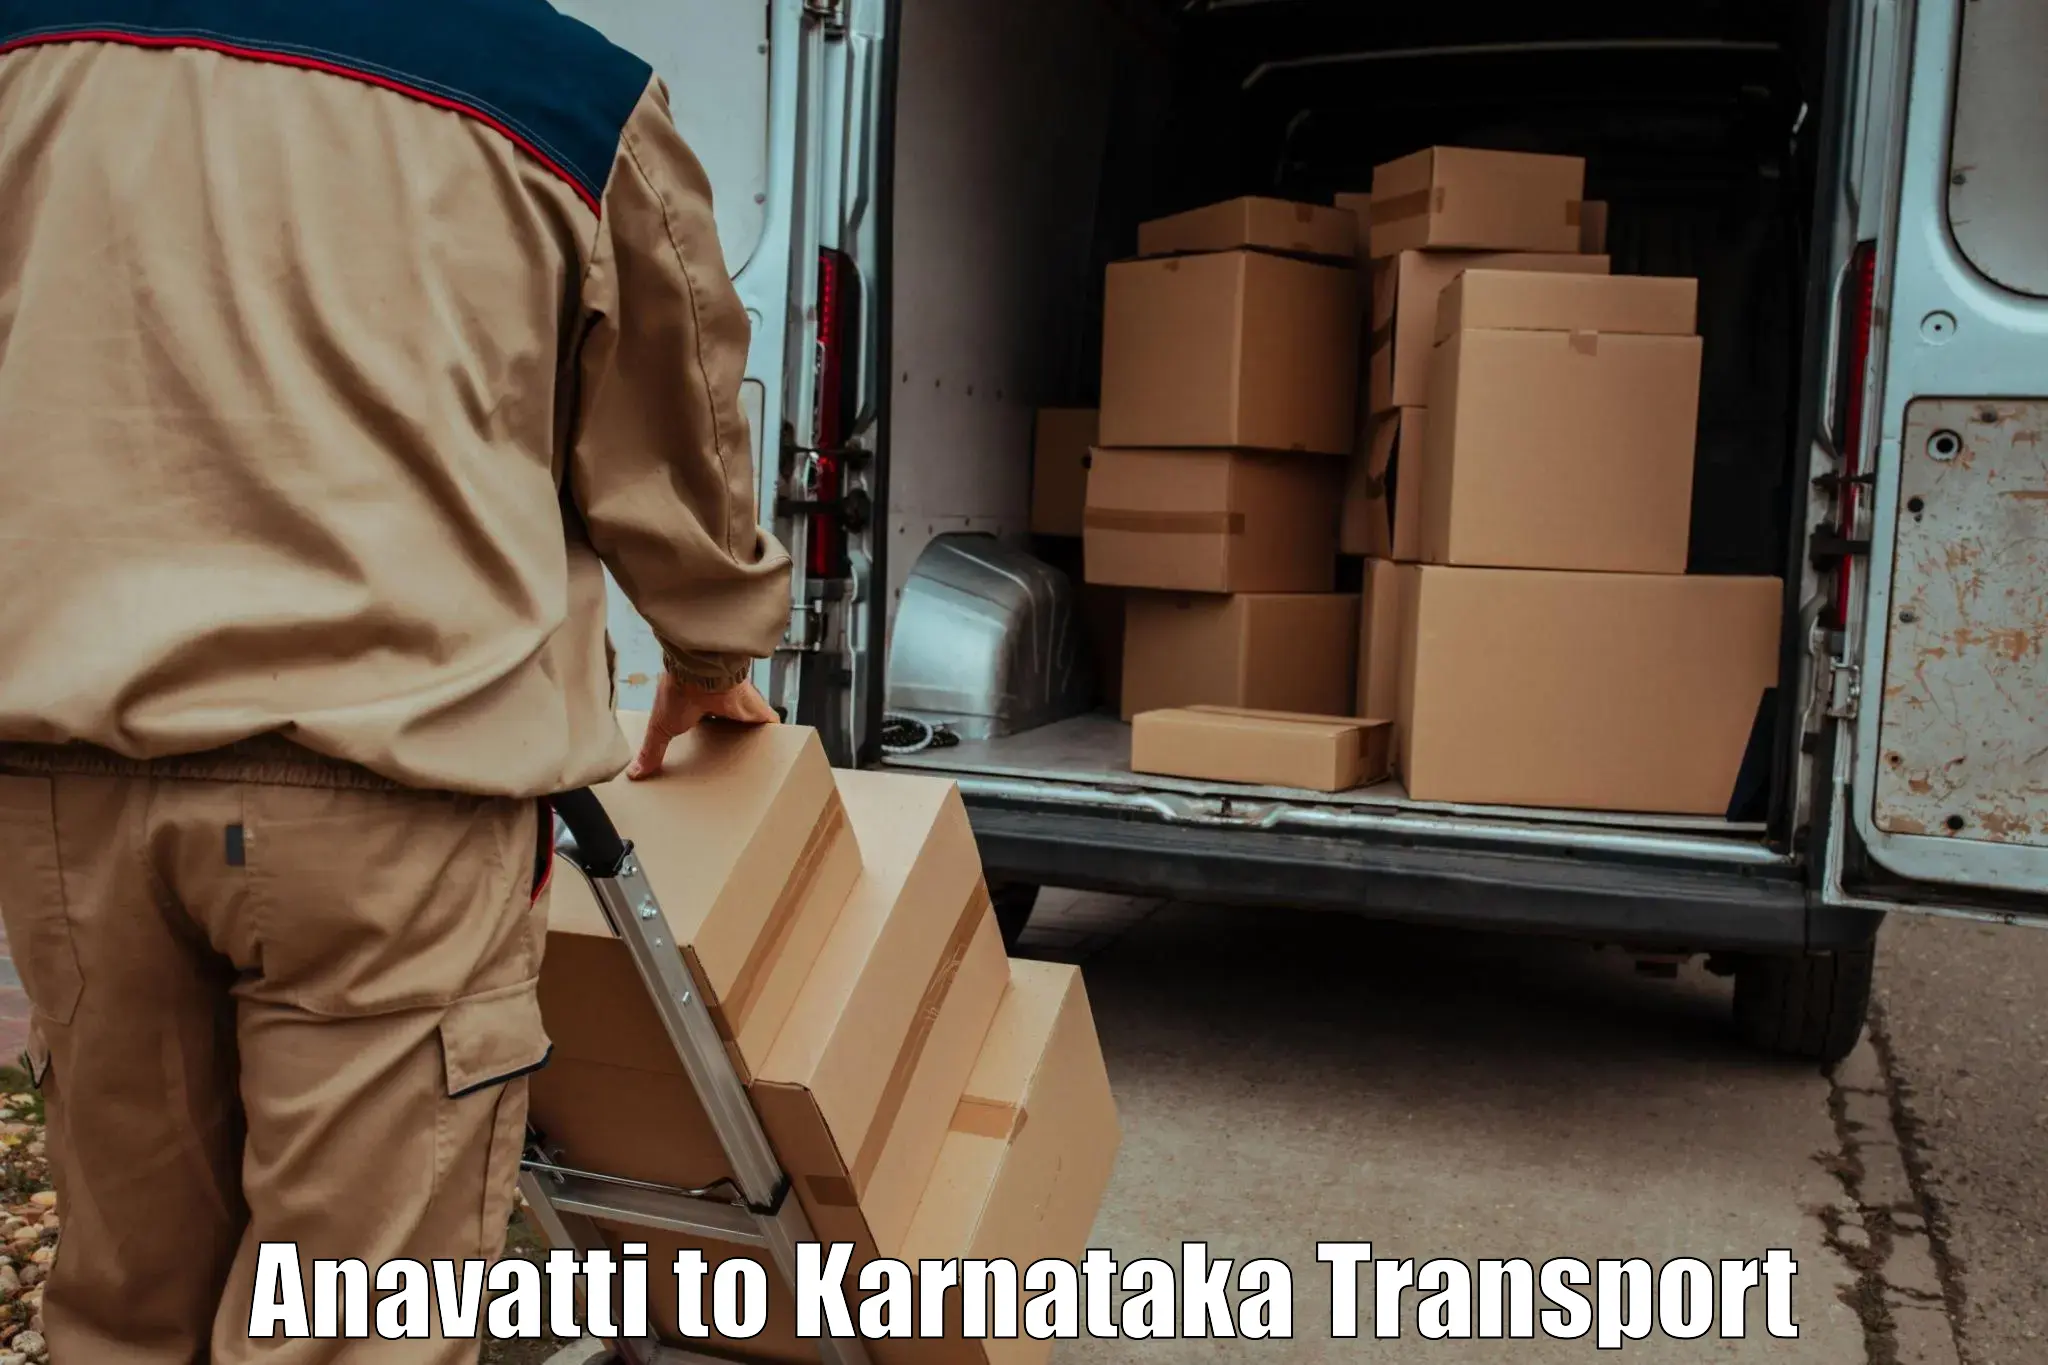 Nationwide transport services Anavatti to Karwar